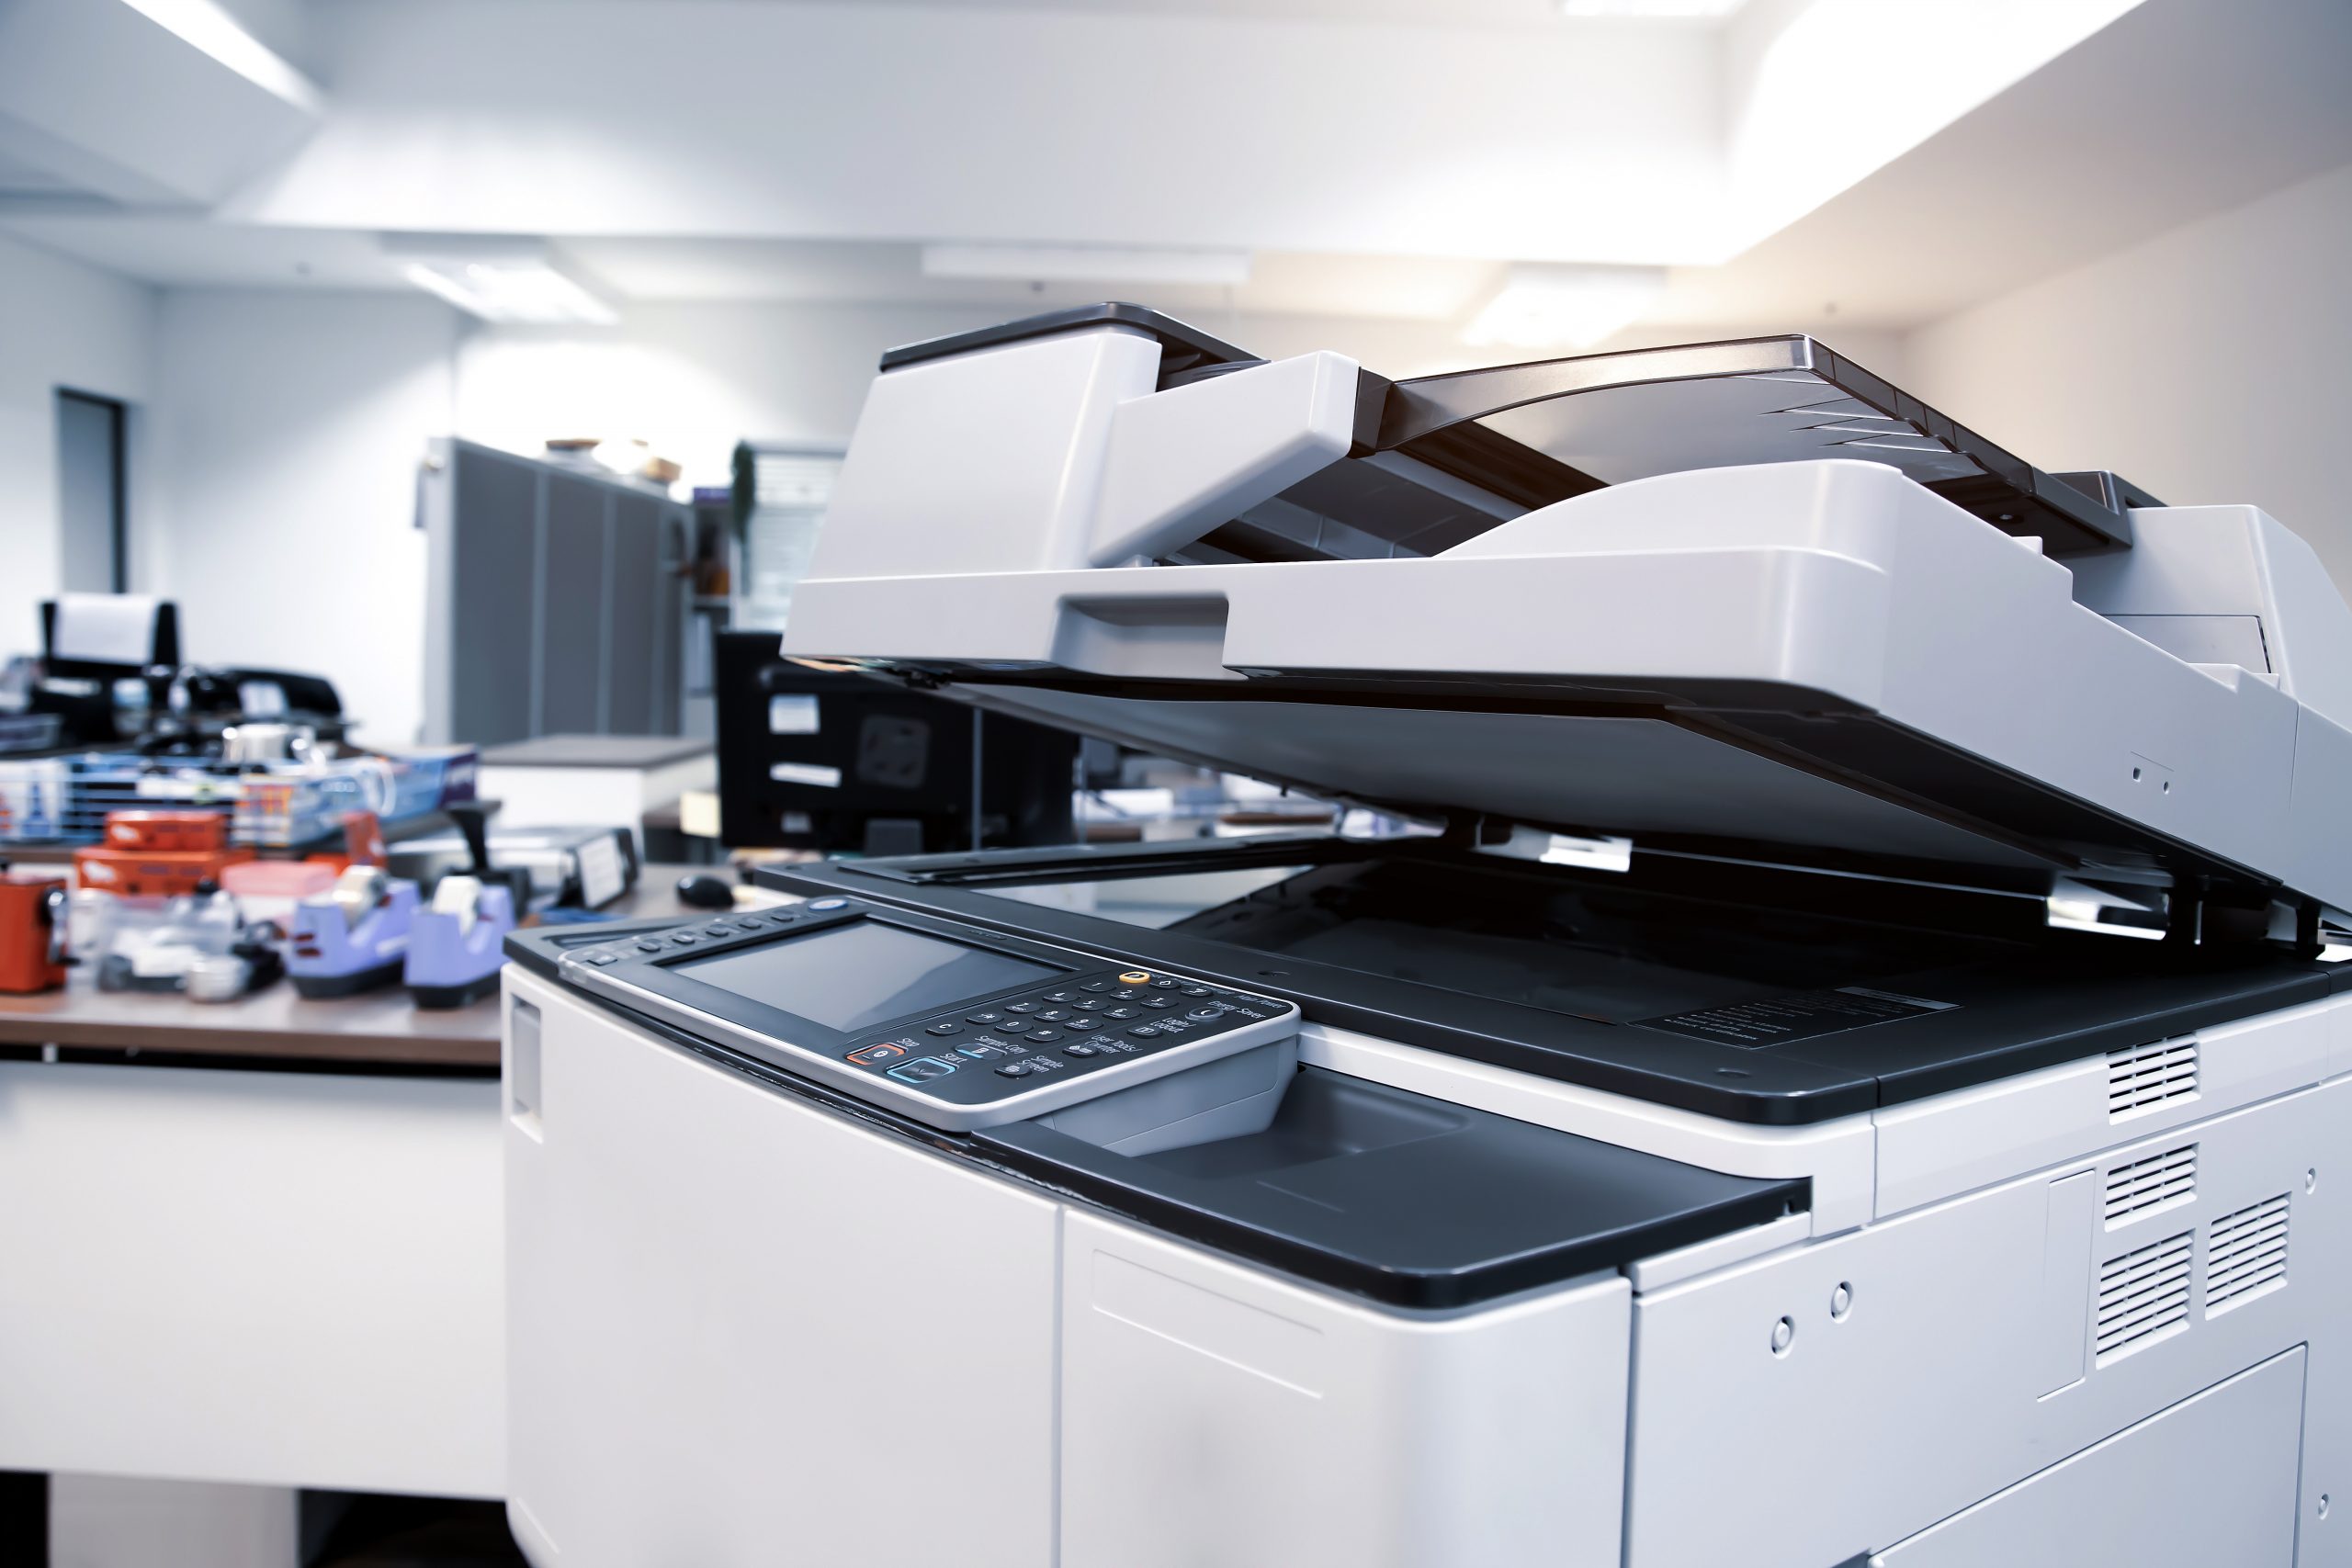 alugar impressoras podem ajudar na sua producao scaled - Outsourcing de impressão em Brusque: entenda como alugar impressoras pode ajudar na sua produção